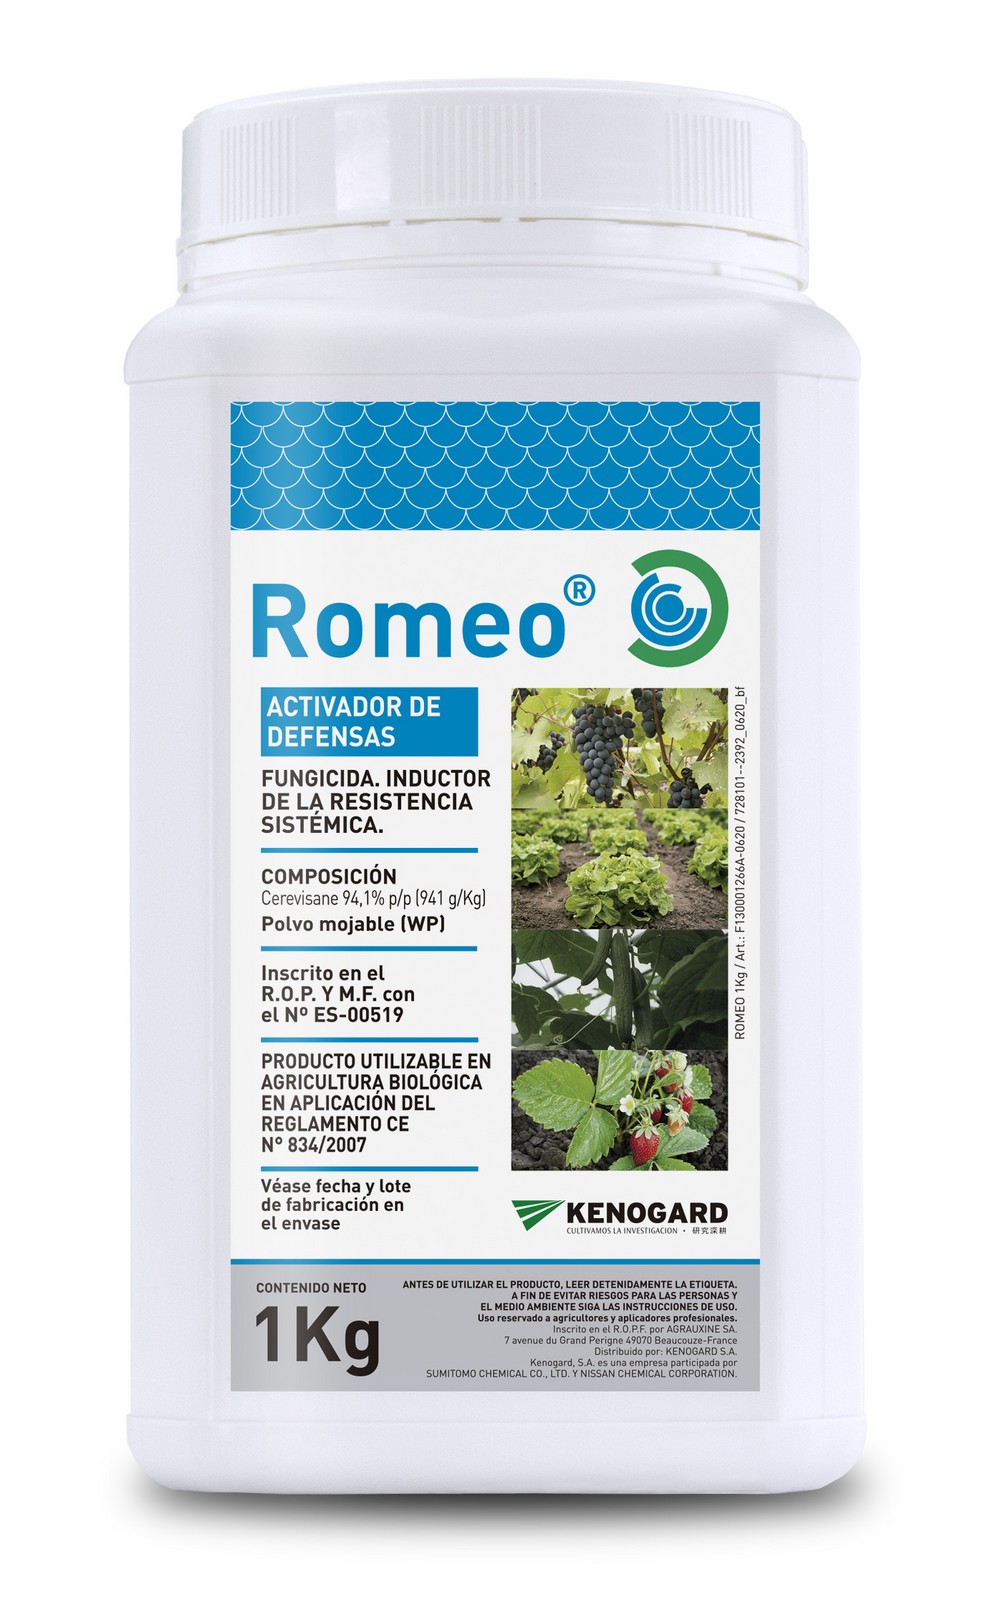 Romeo® fungicida ecológico, inductor de las defensas naturales de la planta, con efecto bioestimulante